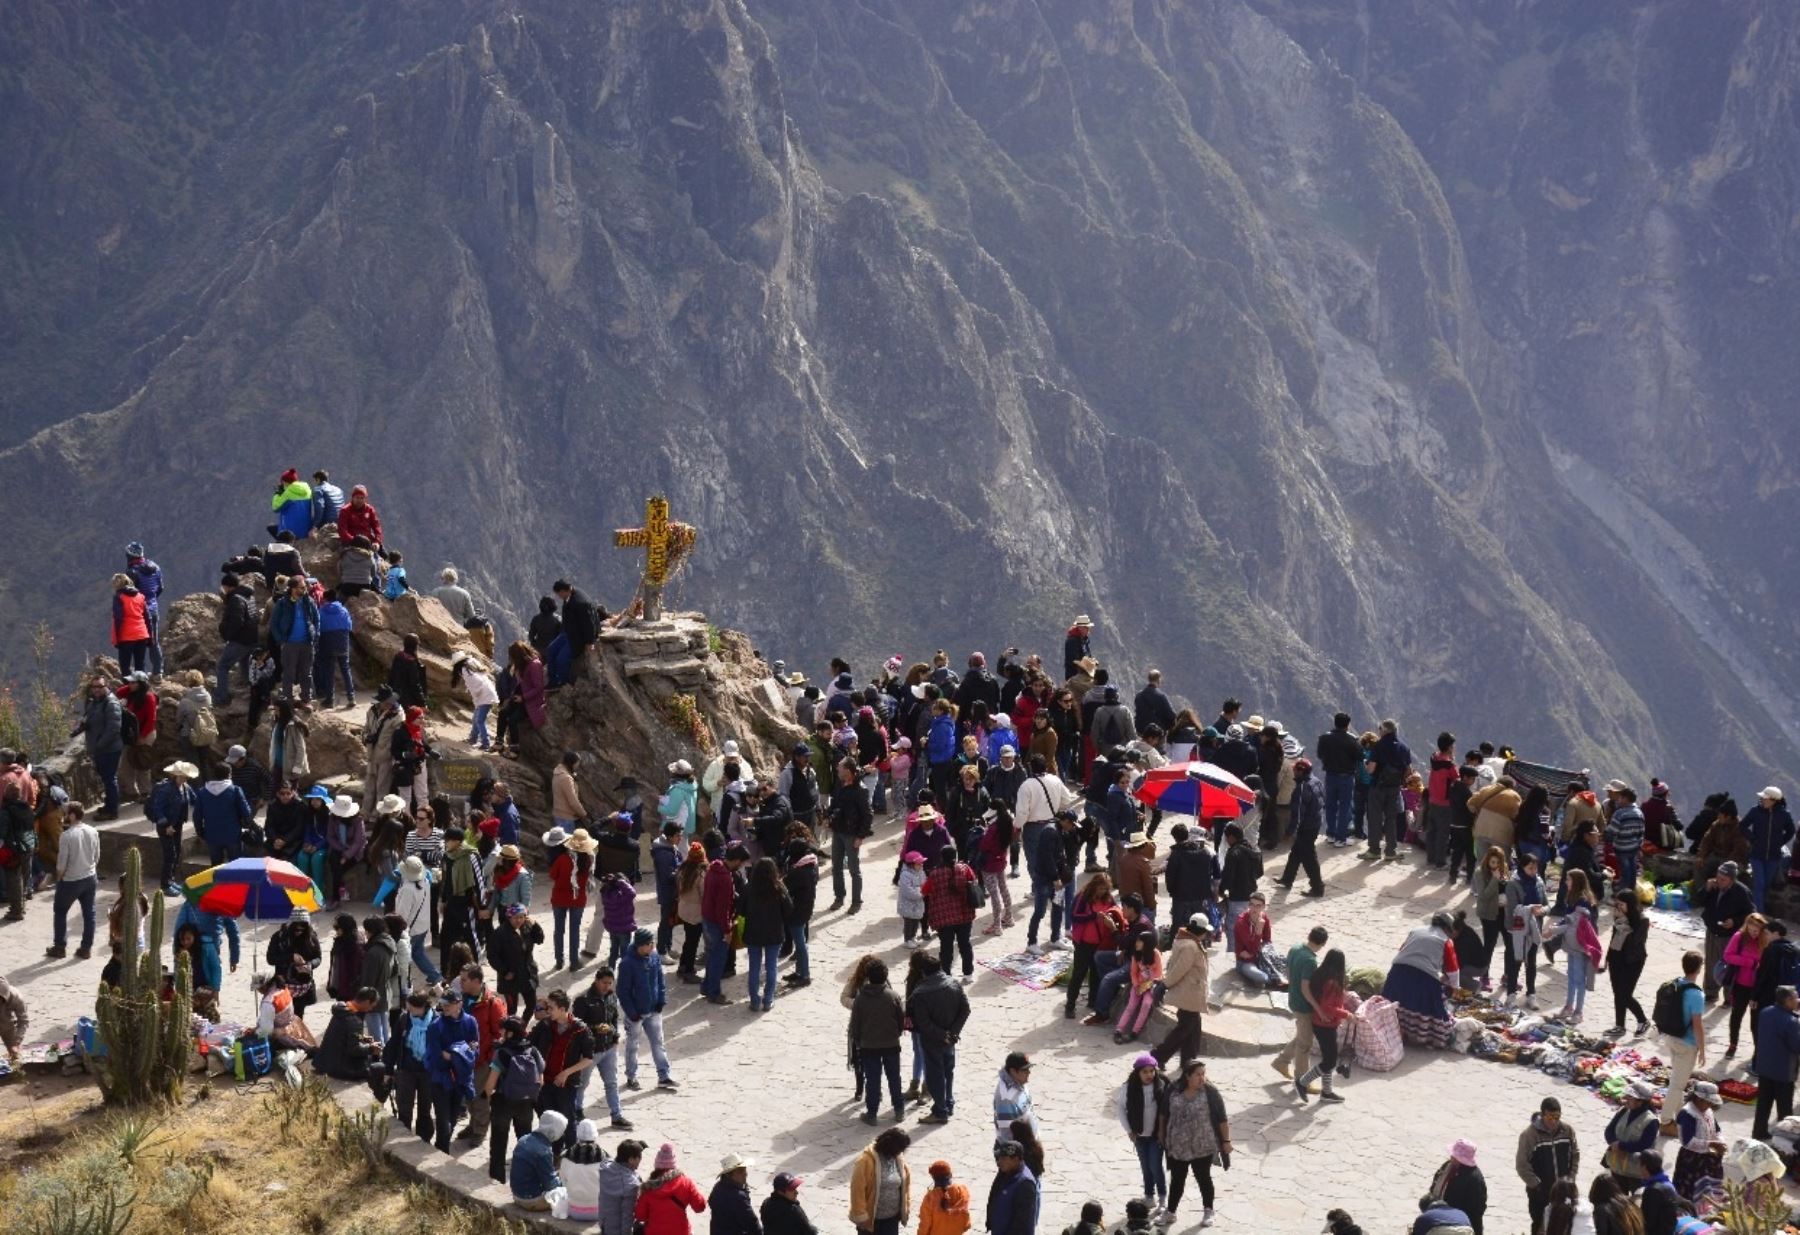 Valle del Colca espera recibir 15,000 turistas durante Fiestas Patrias. ANDINA